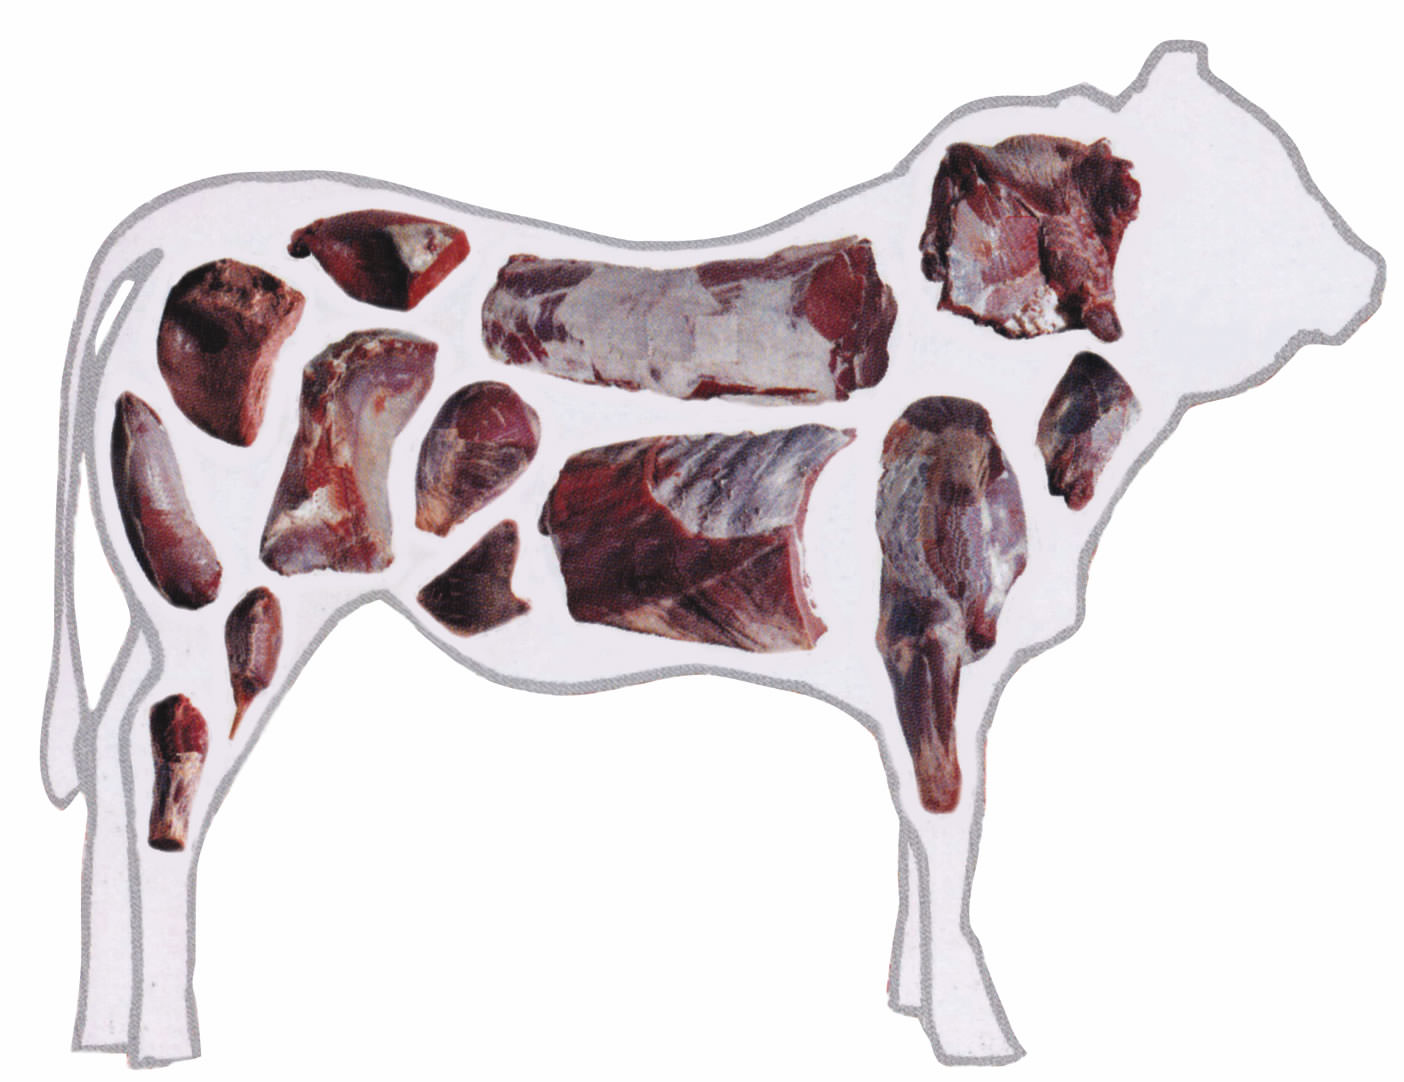 Acido lattico: autorizzato per decontaminare le carni bovine